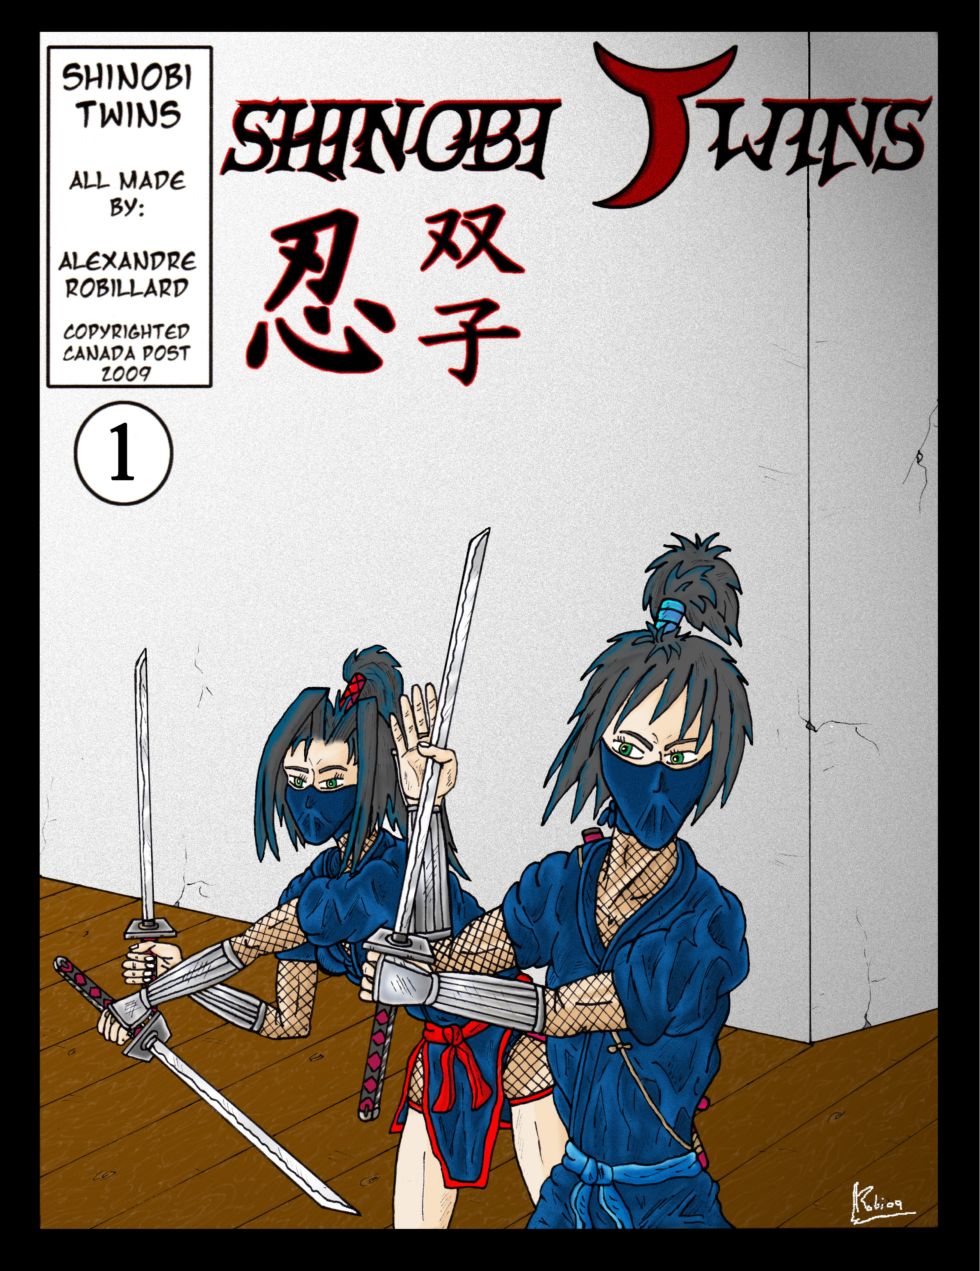 Shinobi Twins Cover1 by shinka